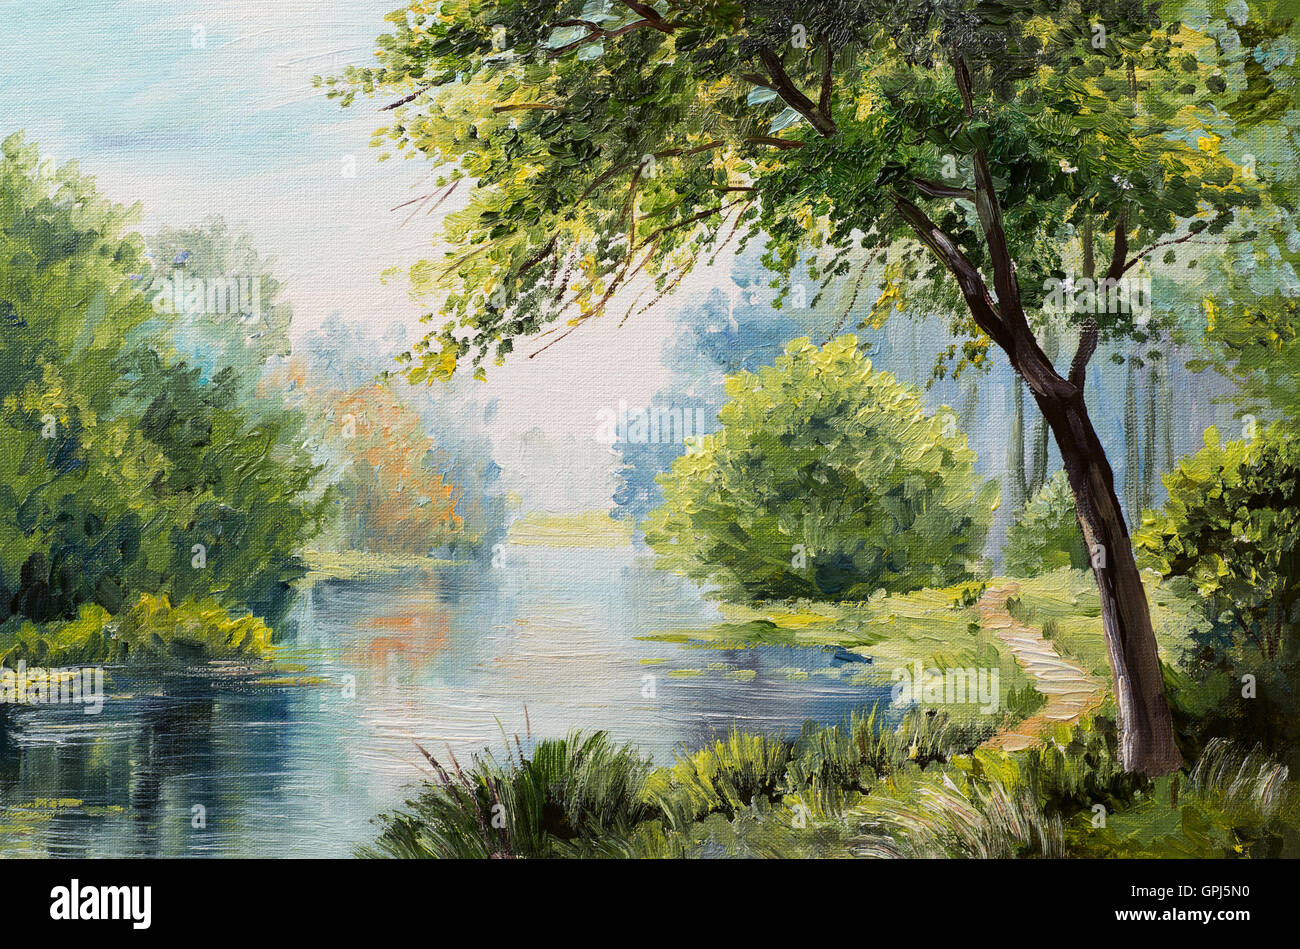 Peinture à l'huile - paysage forêt colorée Banque D'Images